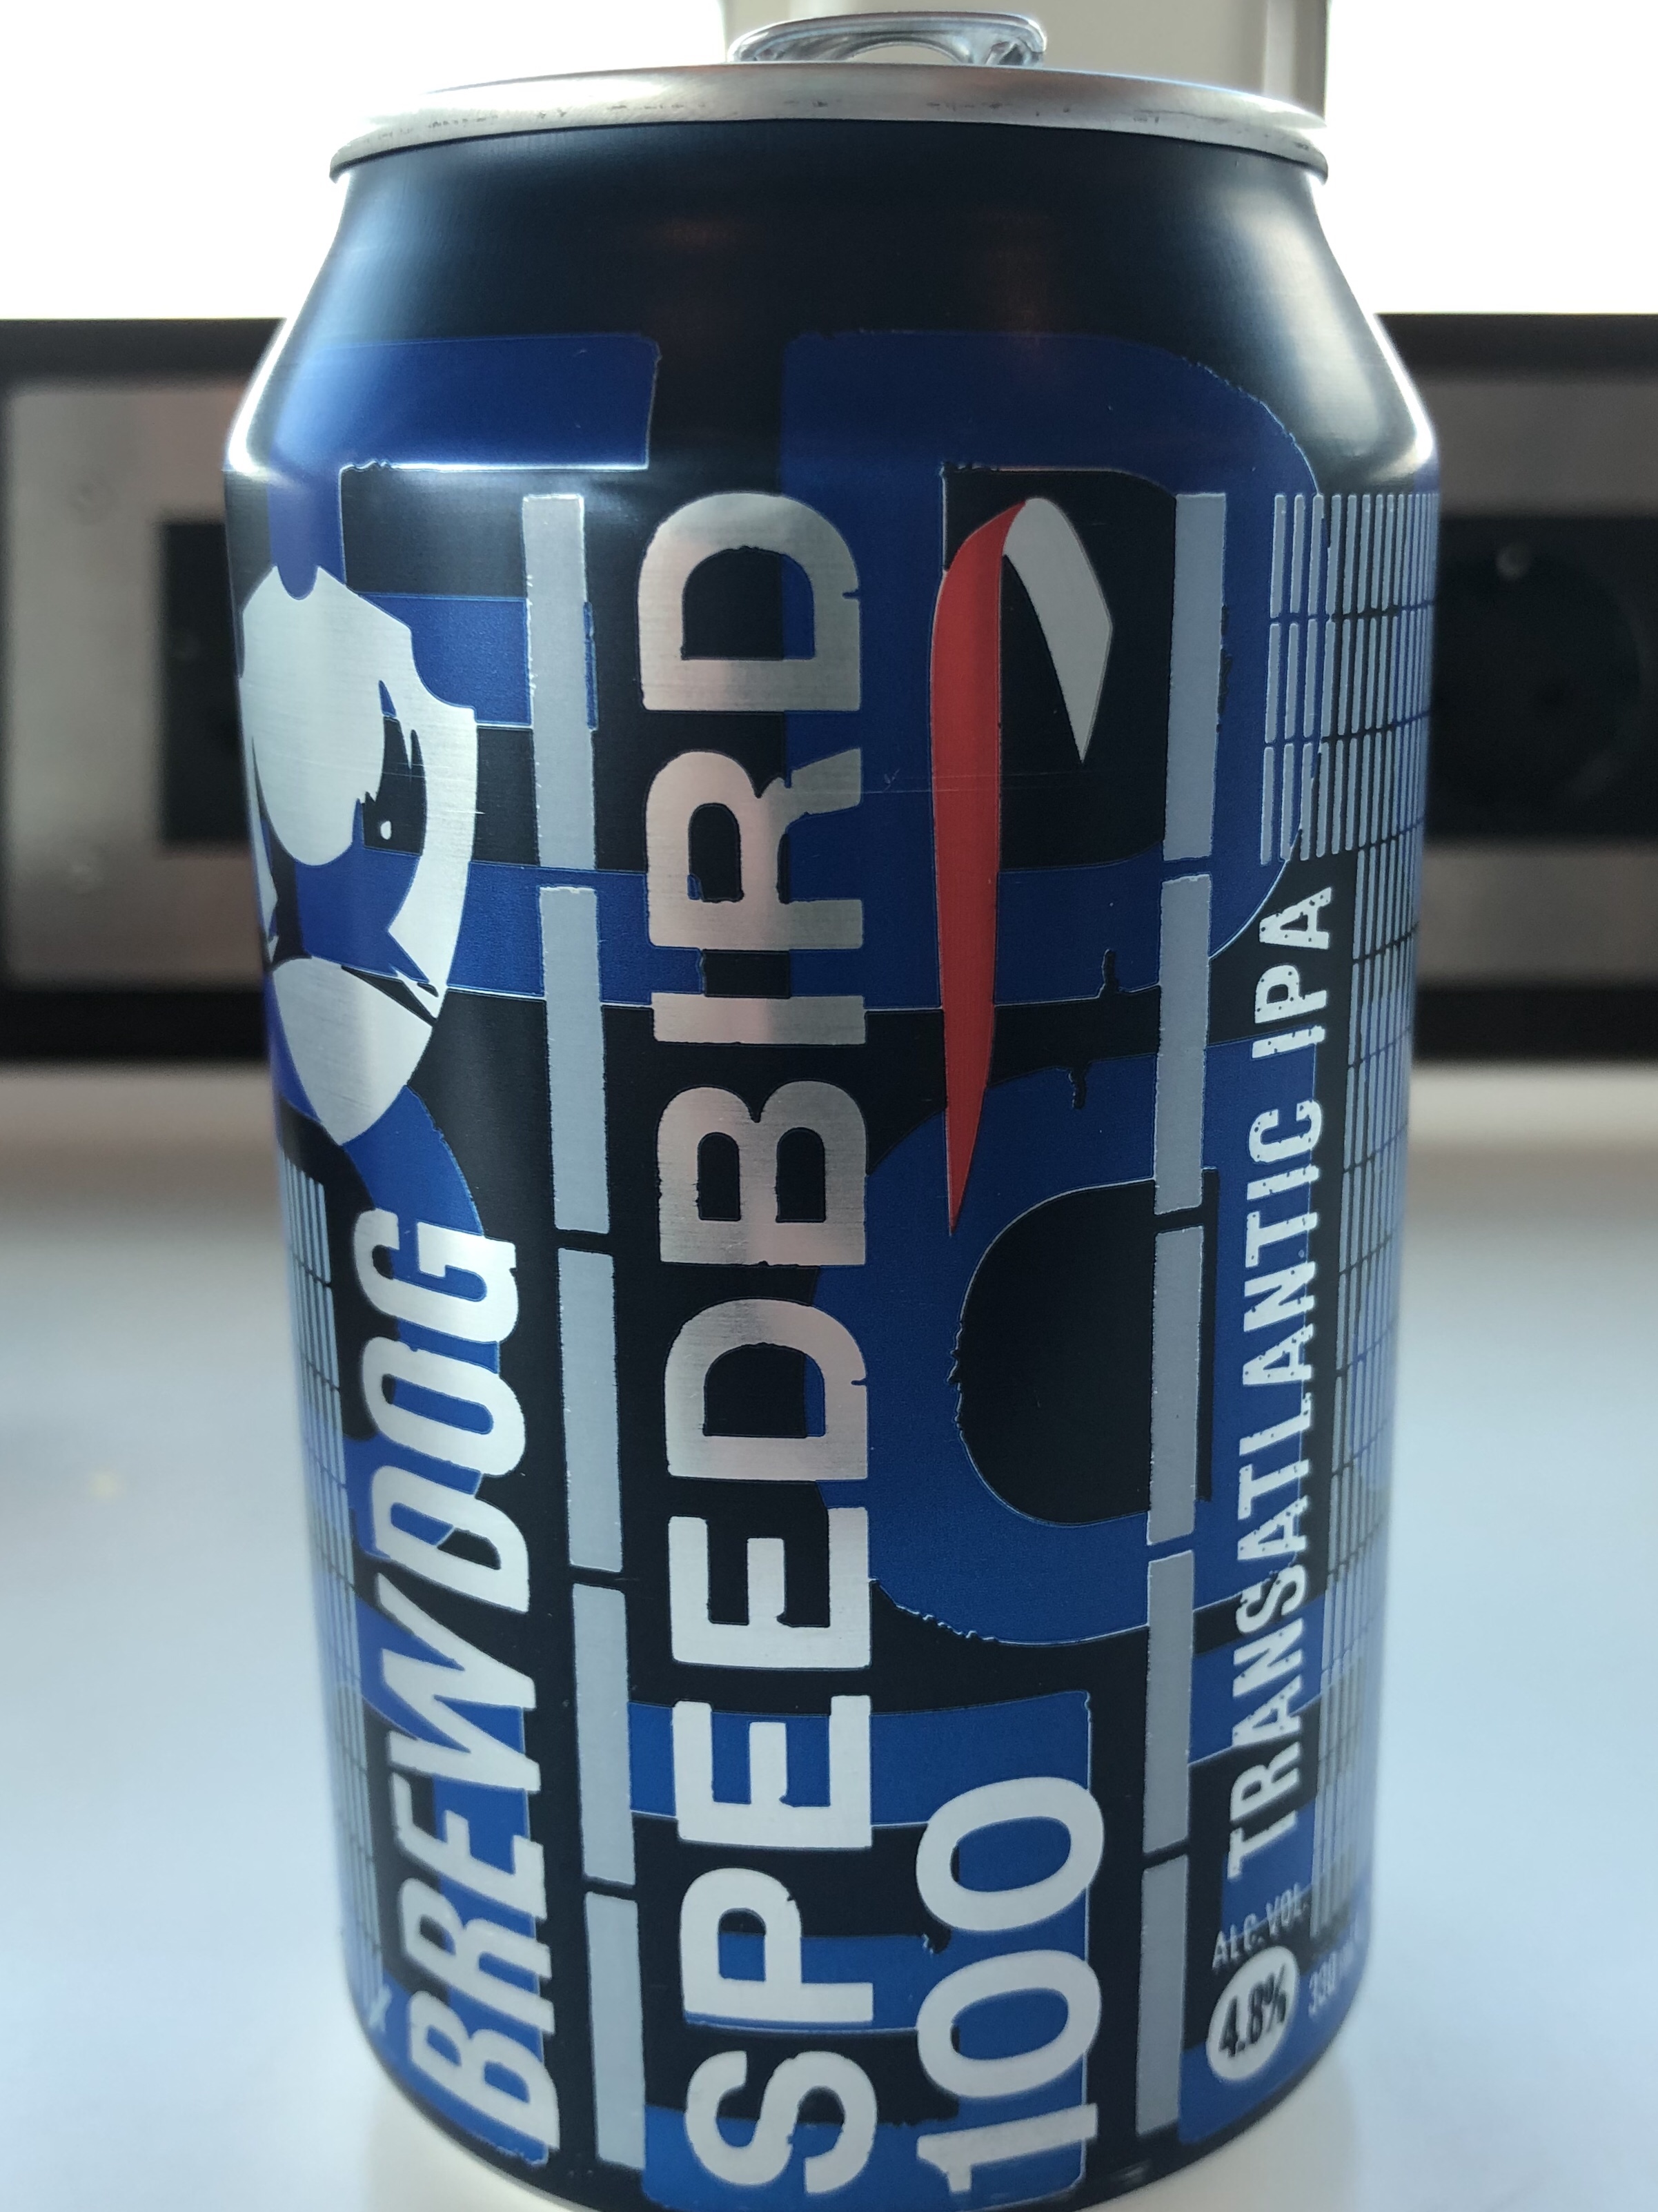 Can of Brewdog Speedbird 100 IPA beer